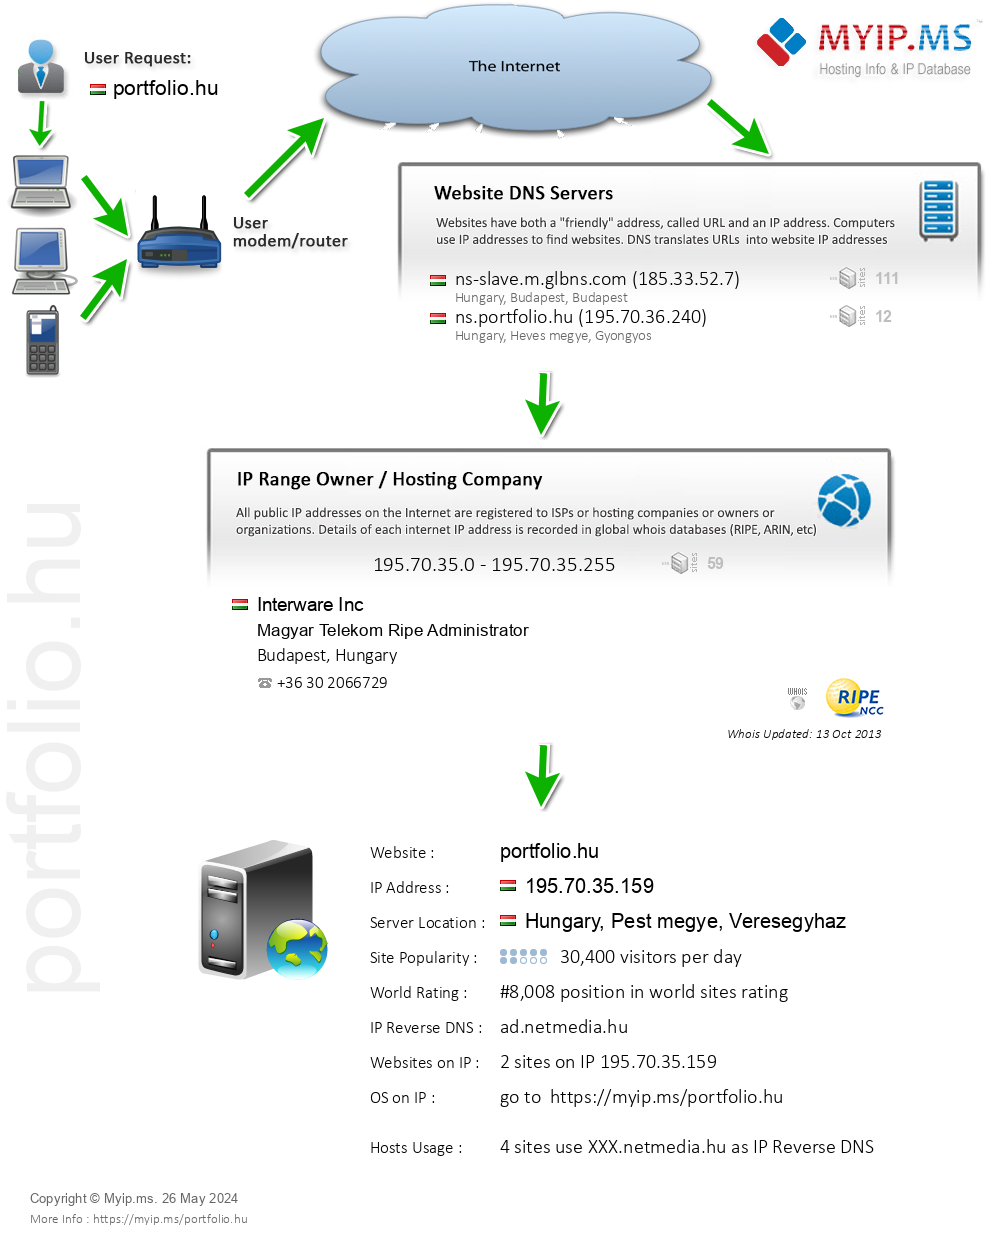 Portfolio.hu - Website Hosting Visual IP Diagram